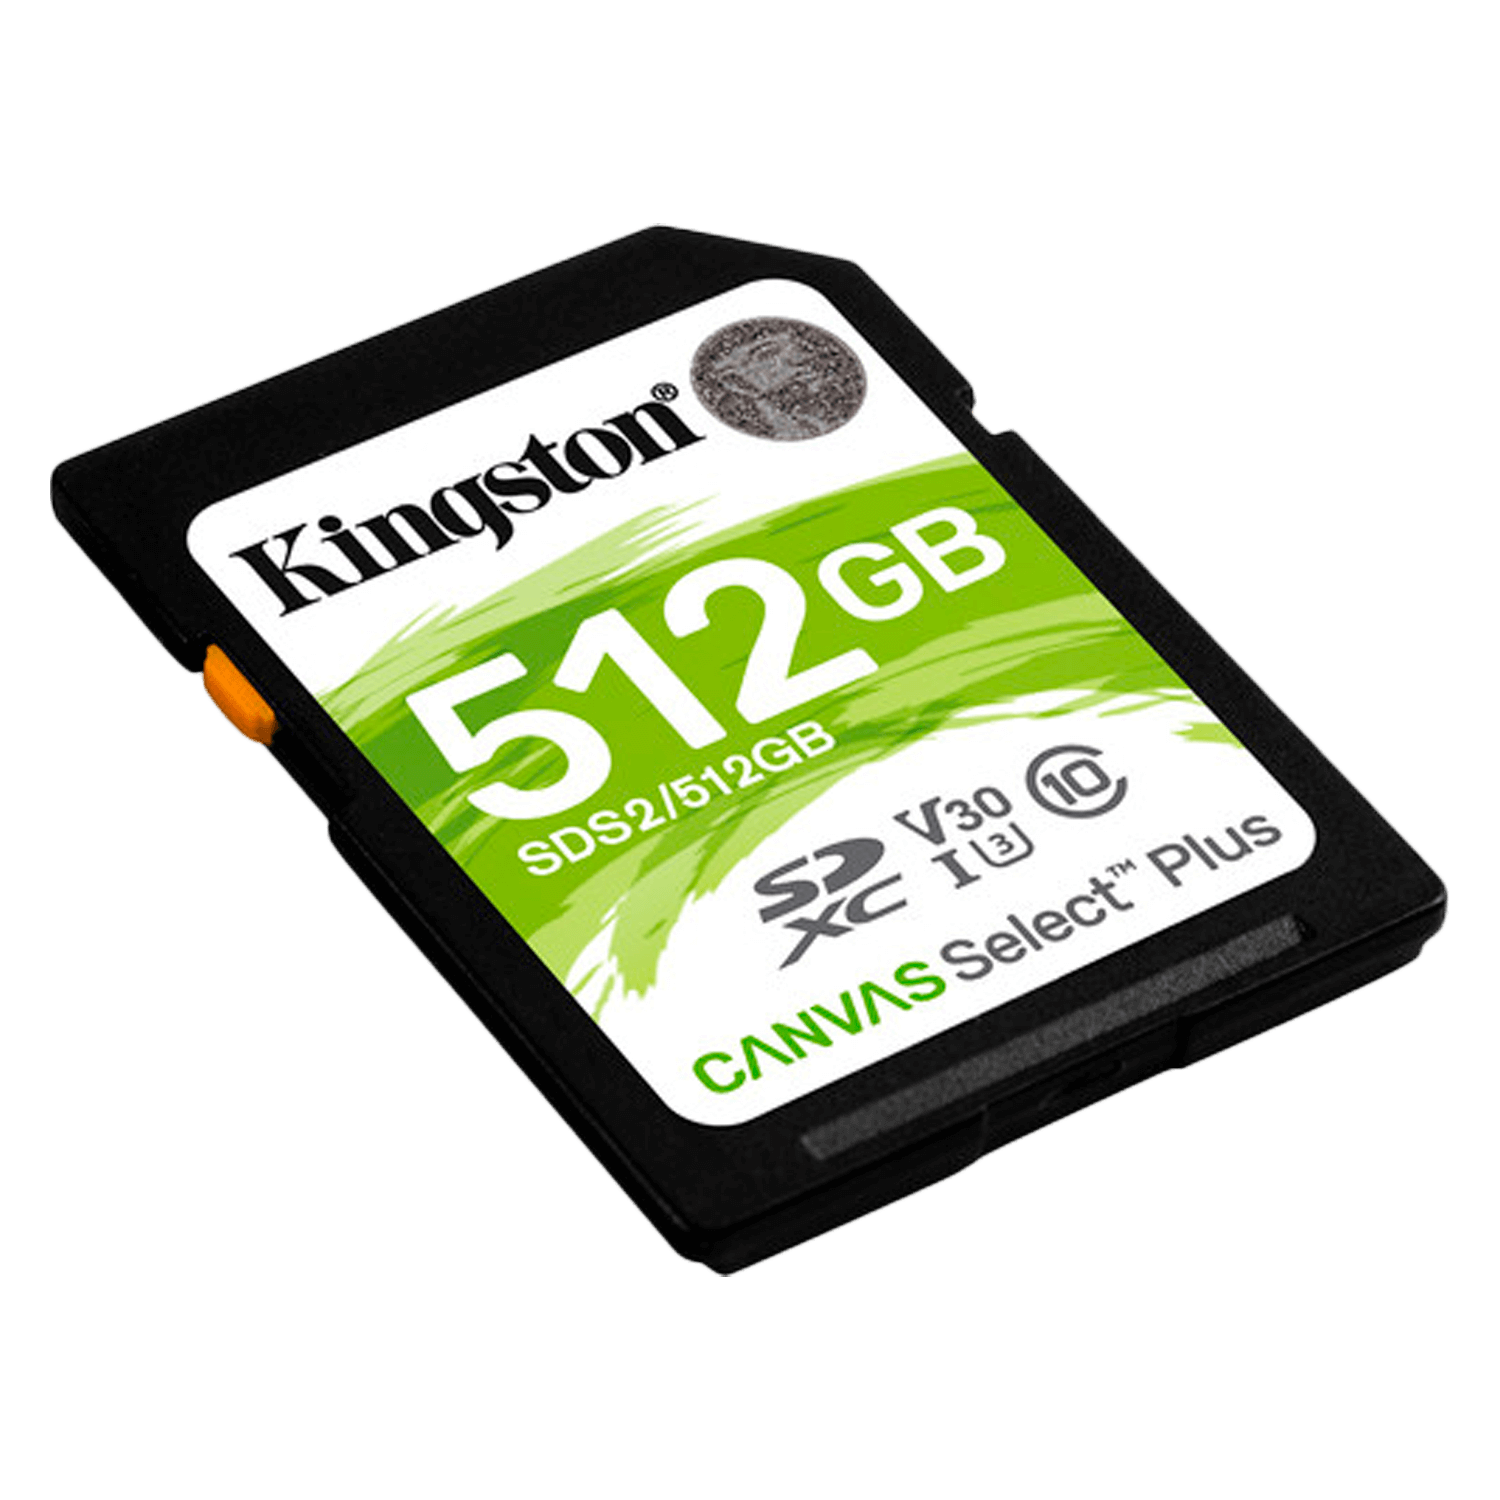 Cartão de Memória SD Kingston Canvas Select Plus 512GB Classe 10 100MBS - (SDS2/512GB)